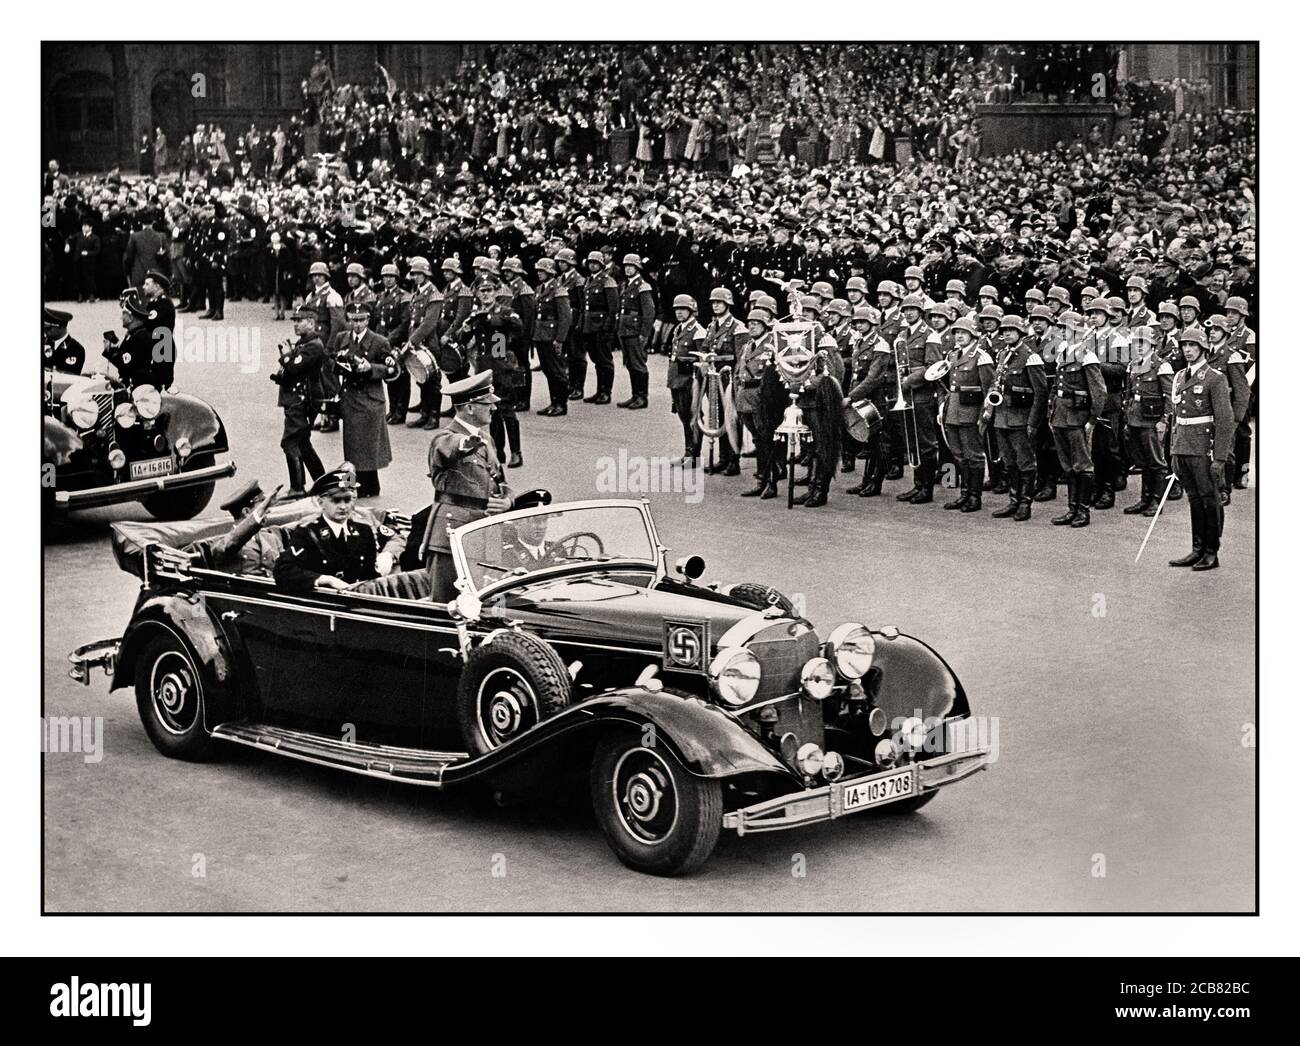 Adolf Hitler des années 1940 dans ses salutes en limousine Mercedes à toit ouvert La foule allemande dans un défilé de victoire à Berlin après Son invasion réussie de la France son personnel Liebstandarte SS 1er Panzer Division en premier plan WW2 Seconde Guerre mondiale Banque D'Images